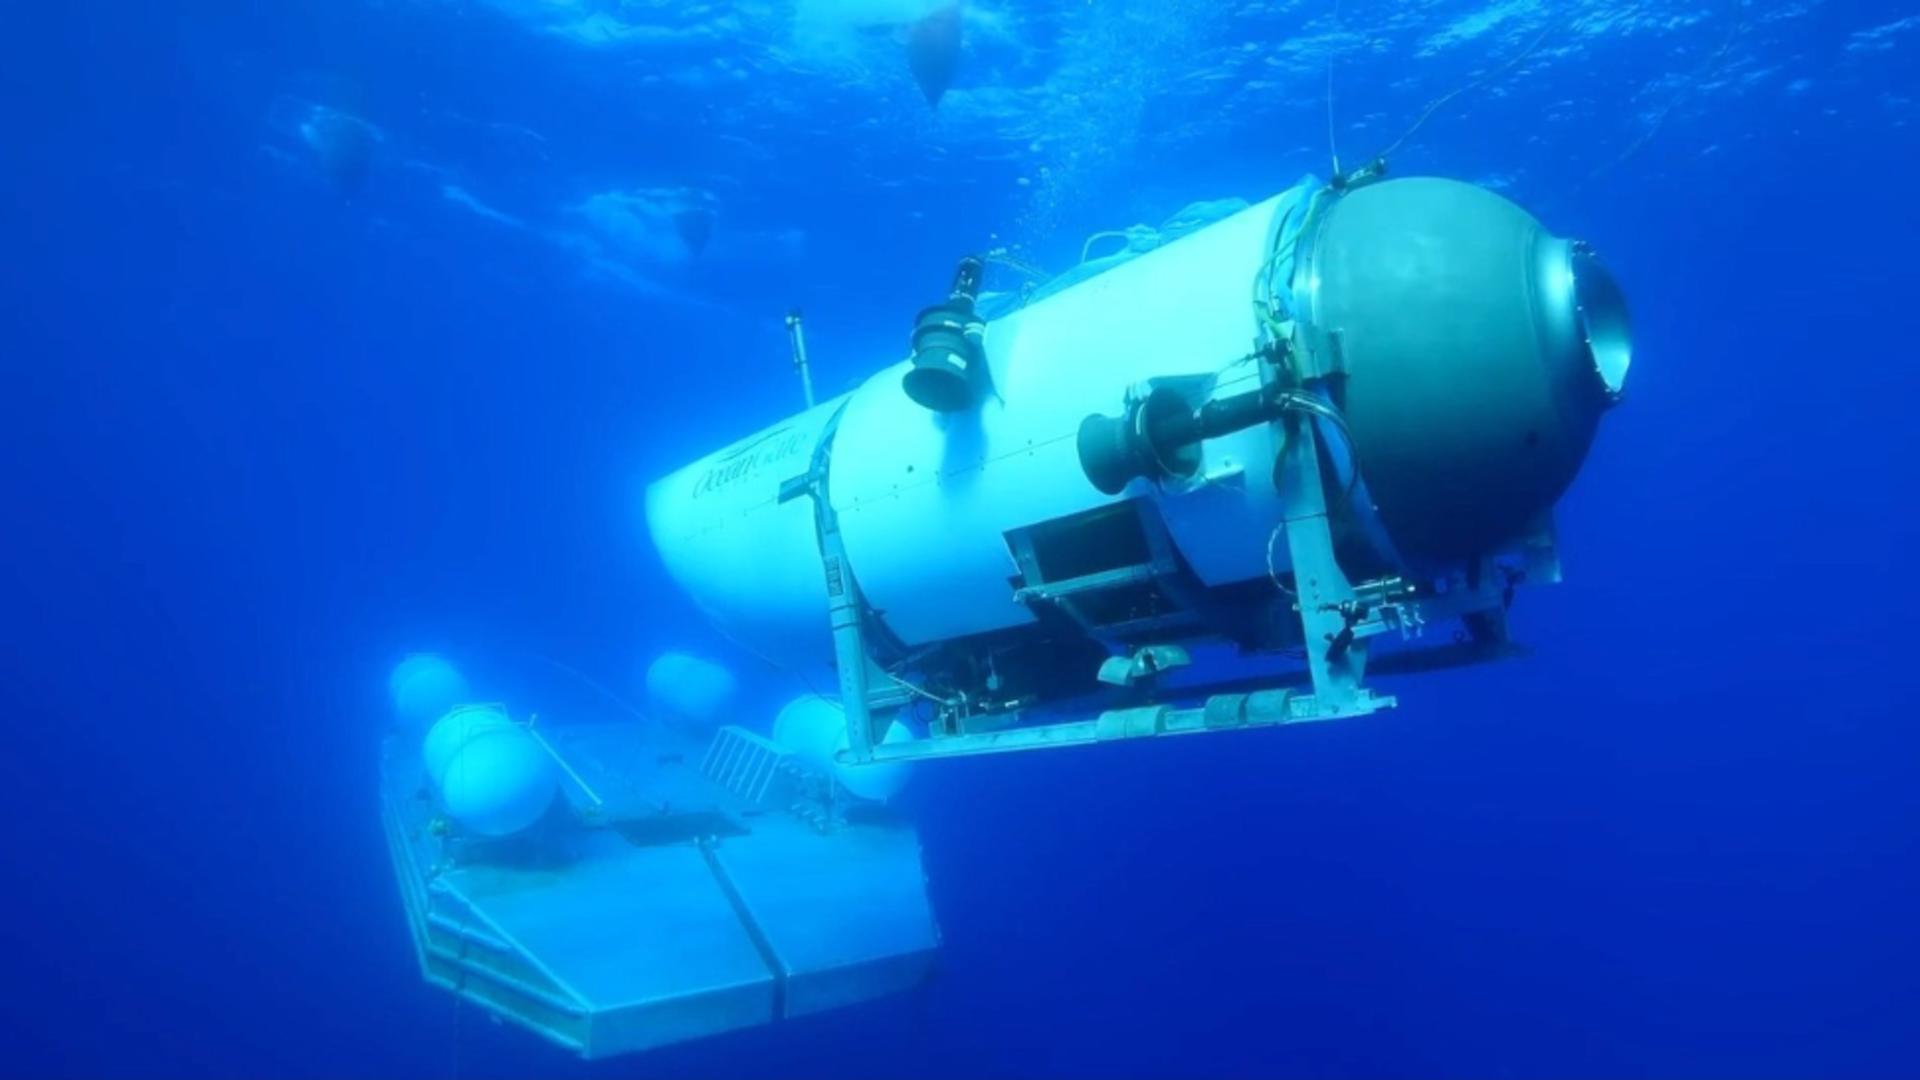 Ceasul ticăie pentru submarinul dispărut, plin de miliardari: „Aproximativ 40 de ore de oxigen” rămase. Care este stadiul căutărilor